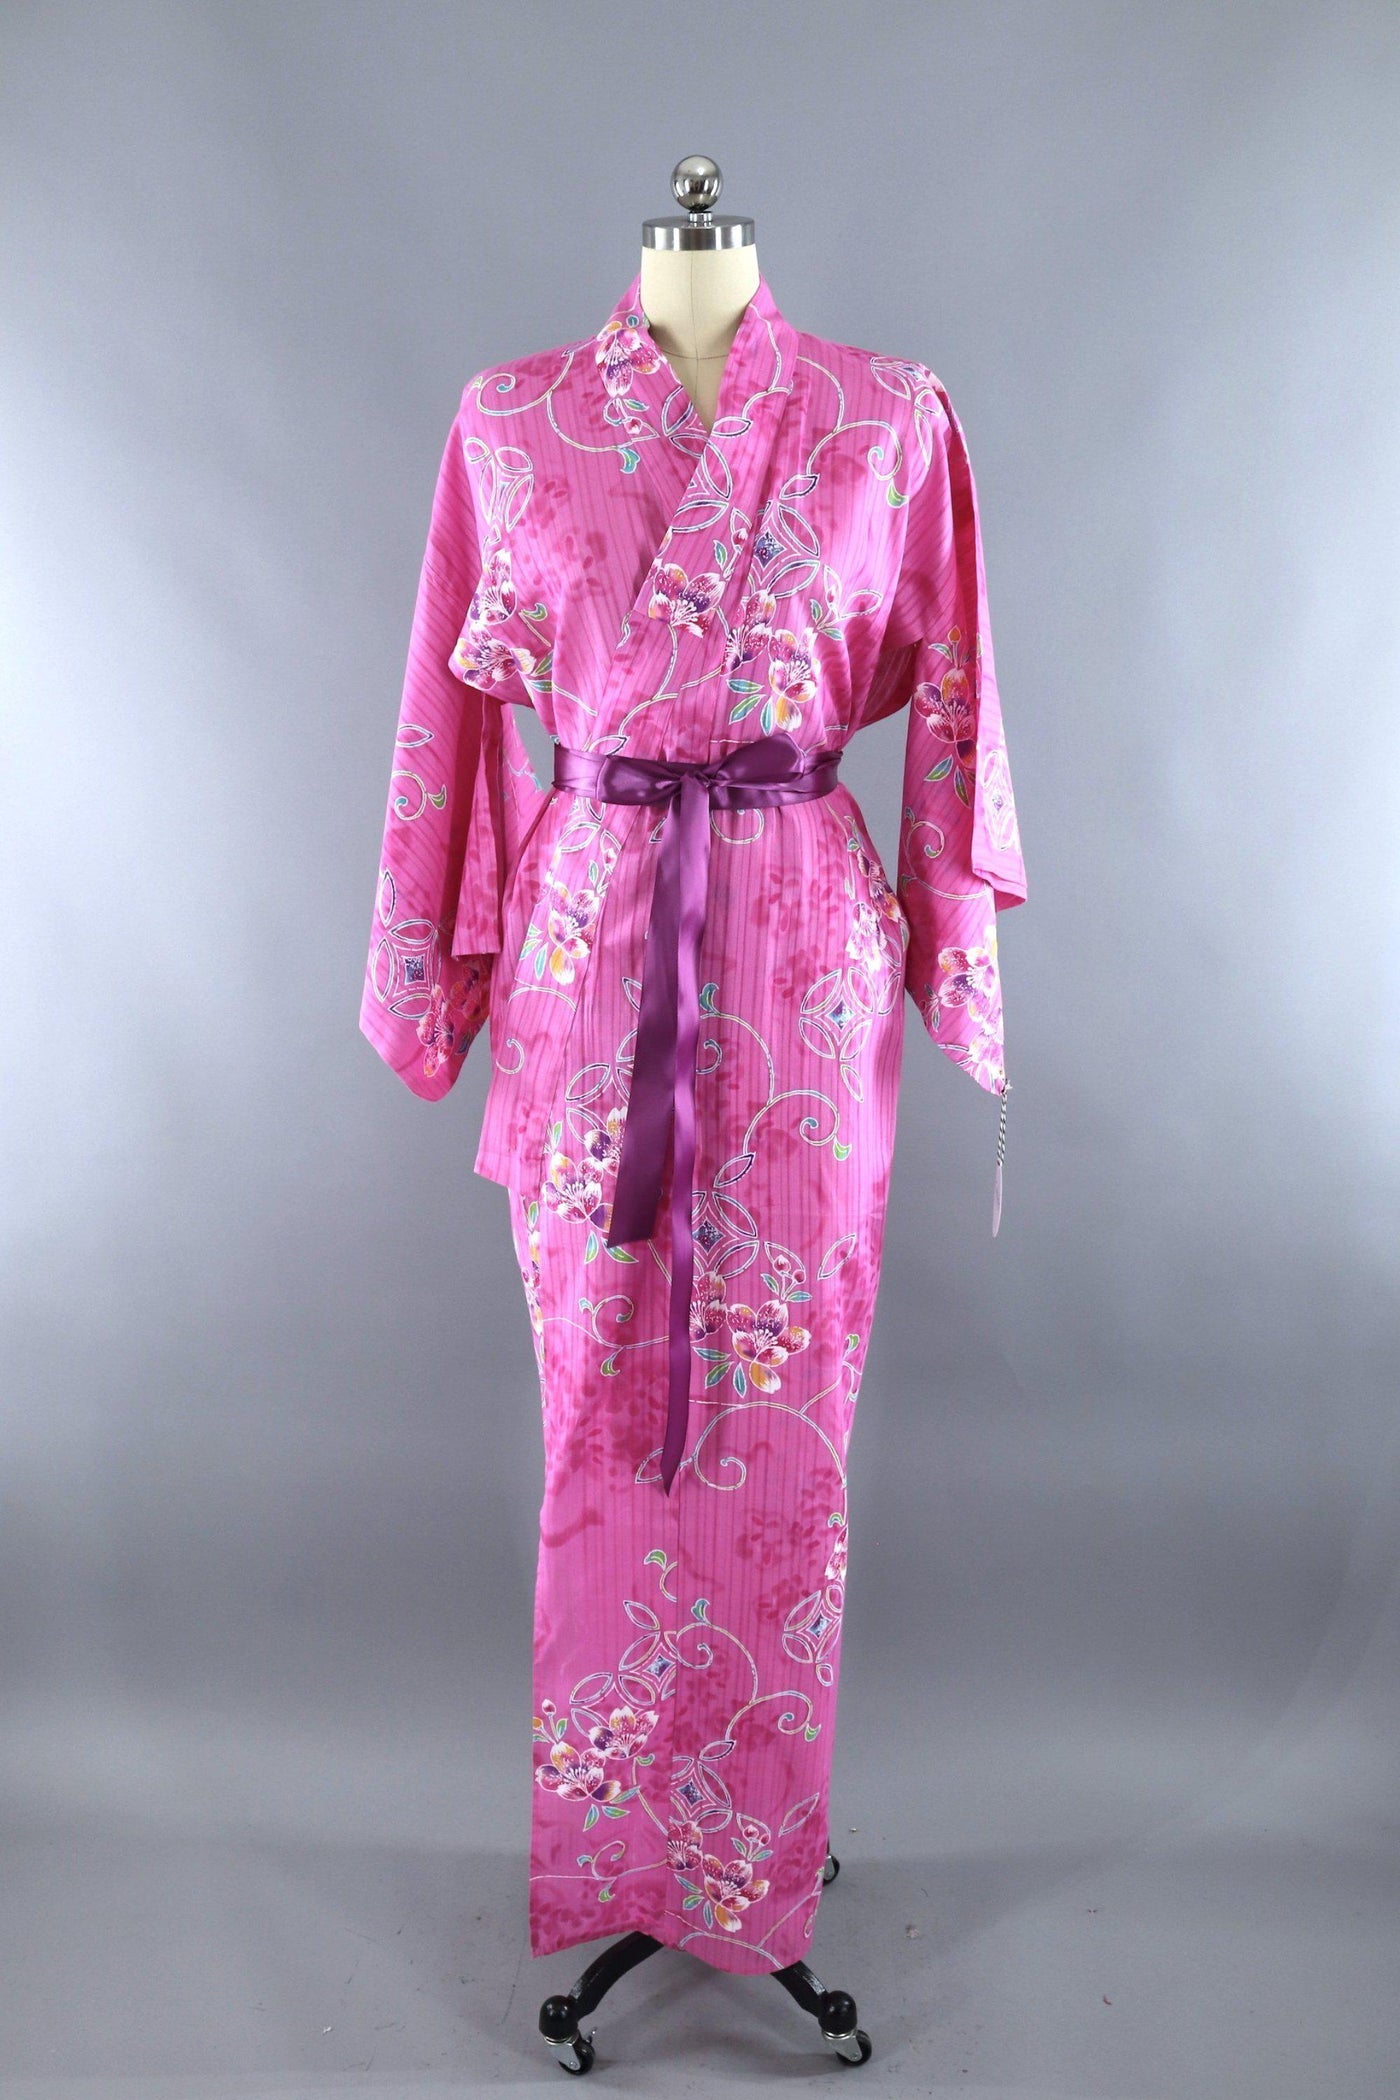 Vintage Cotton Yukata Kimono Robe / Pink Batik Floral Print - ThisBlueBird